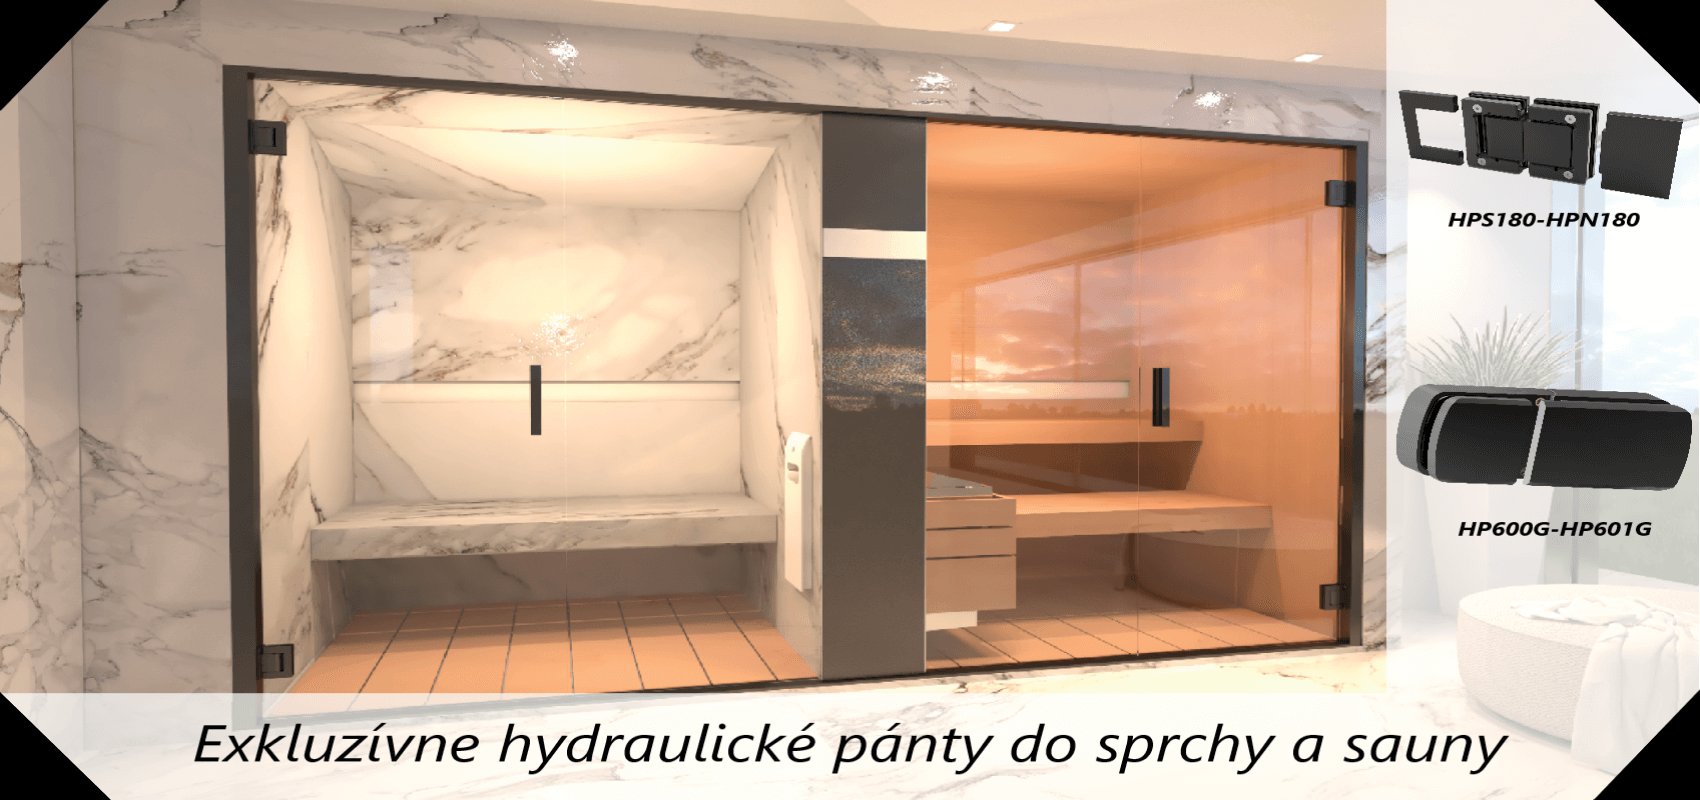 Exkluzívne hydraulické pánty do sprchy a sauny